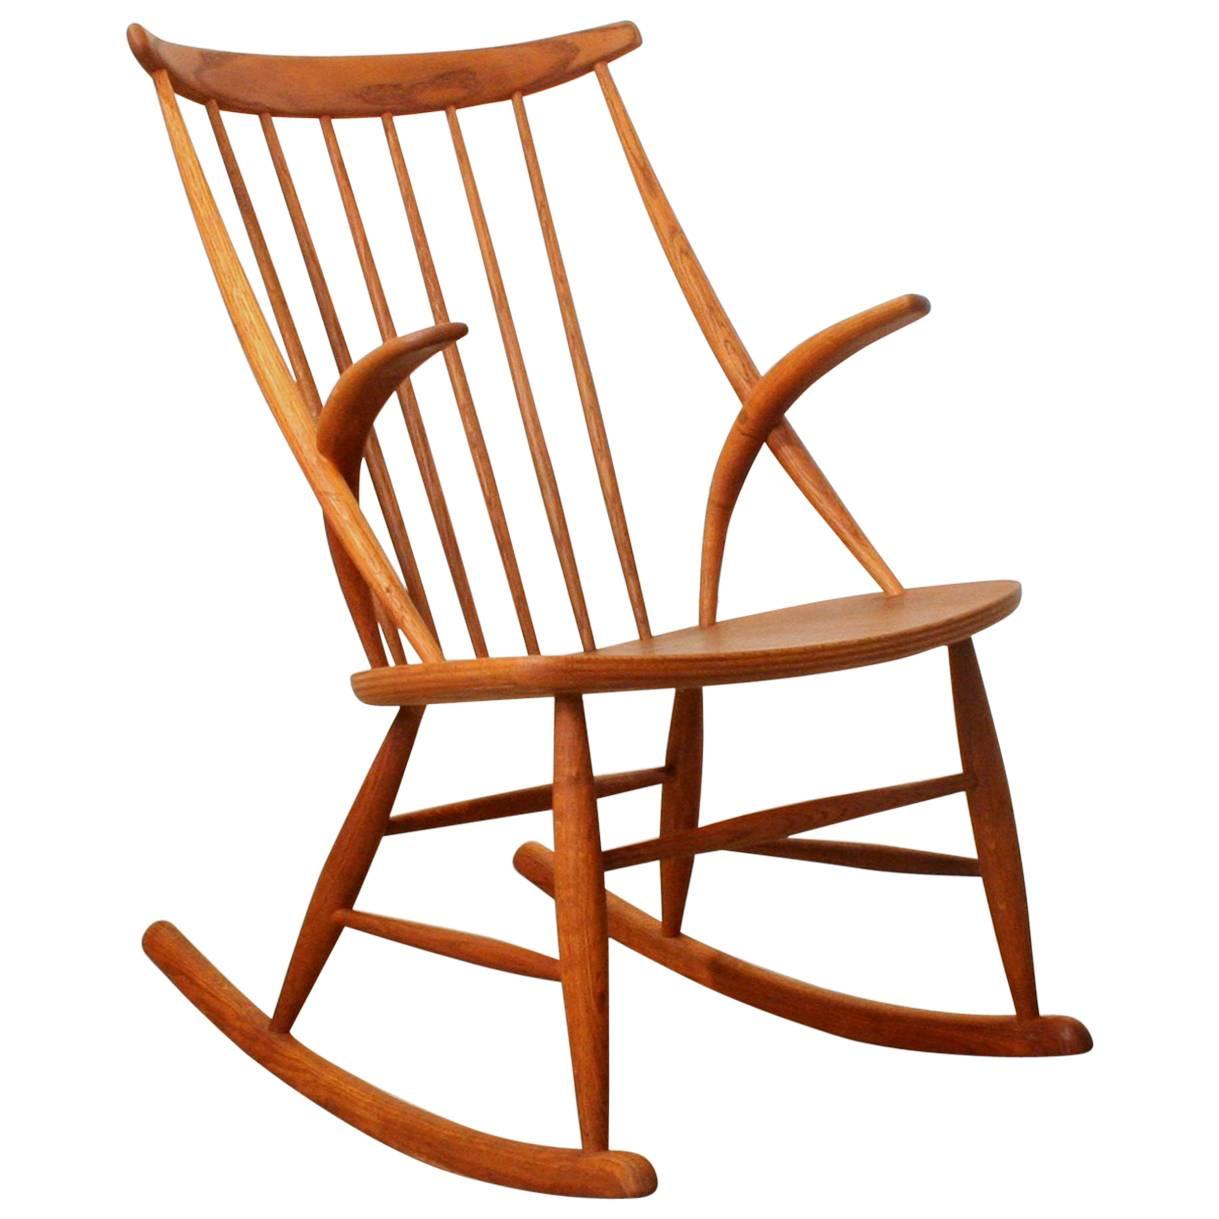 Vintage Danish Oak Rocking Chair by Illum Wikkelsoe